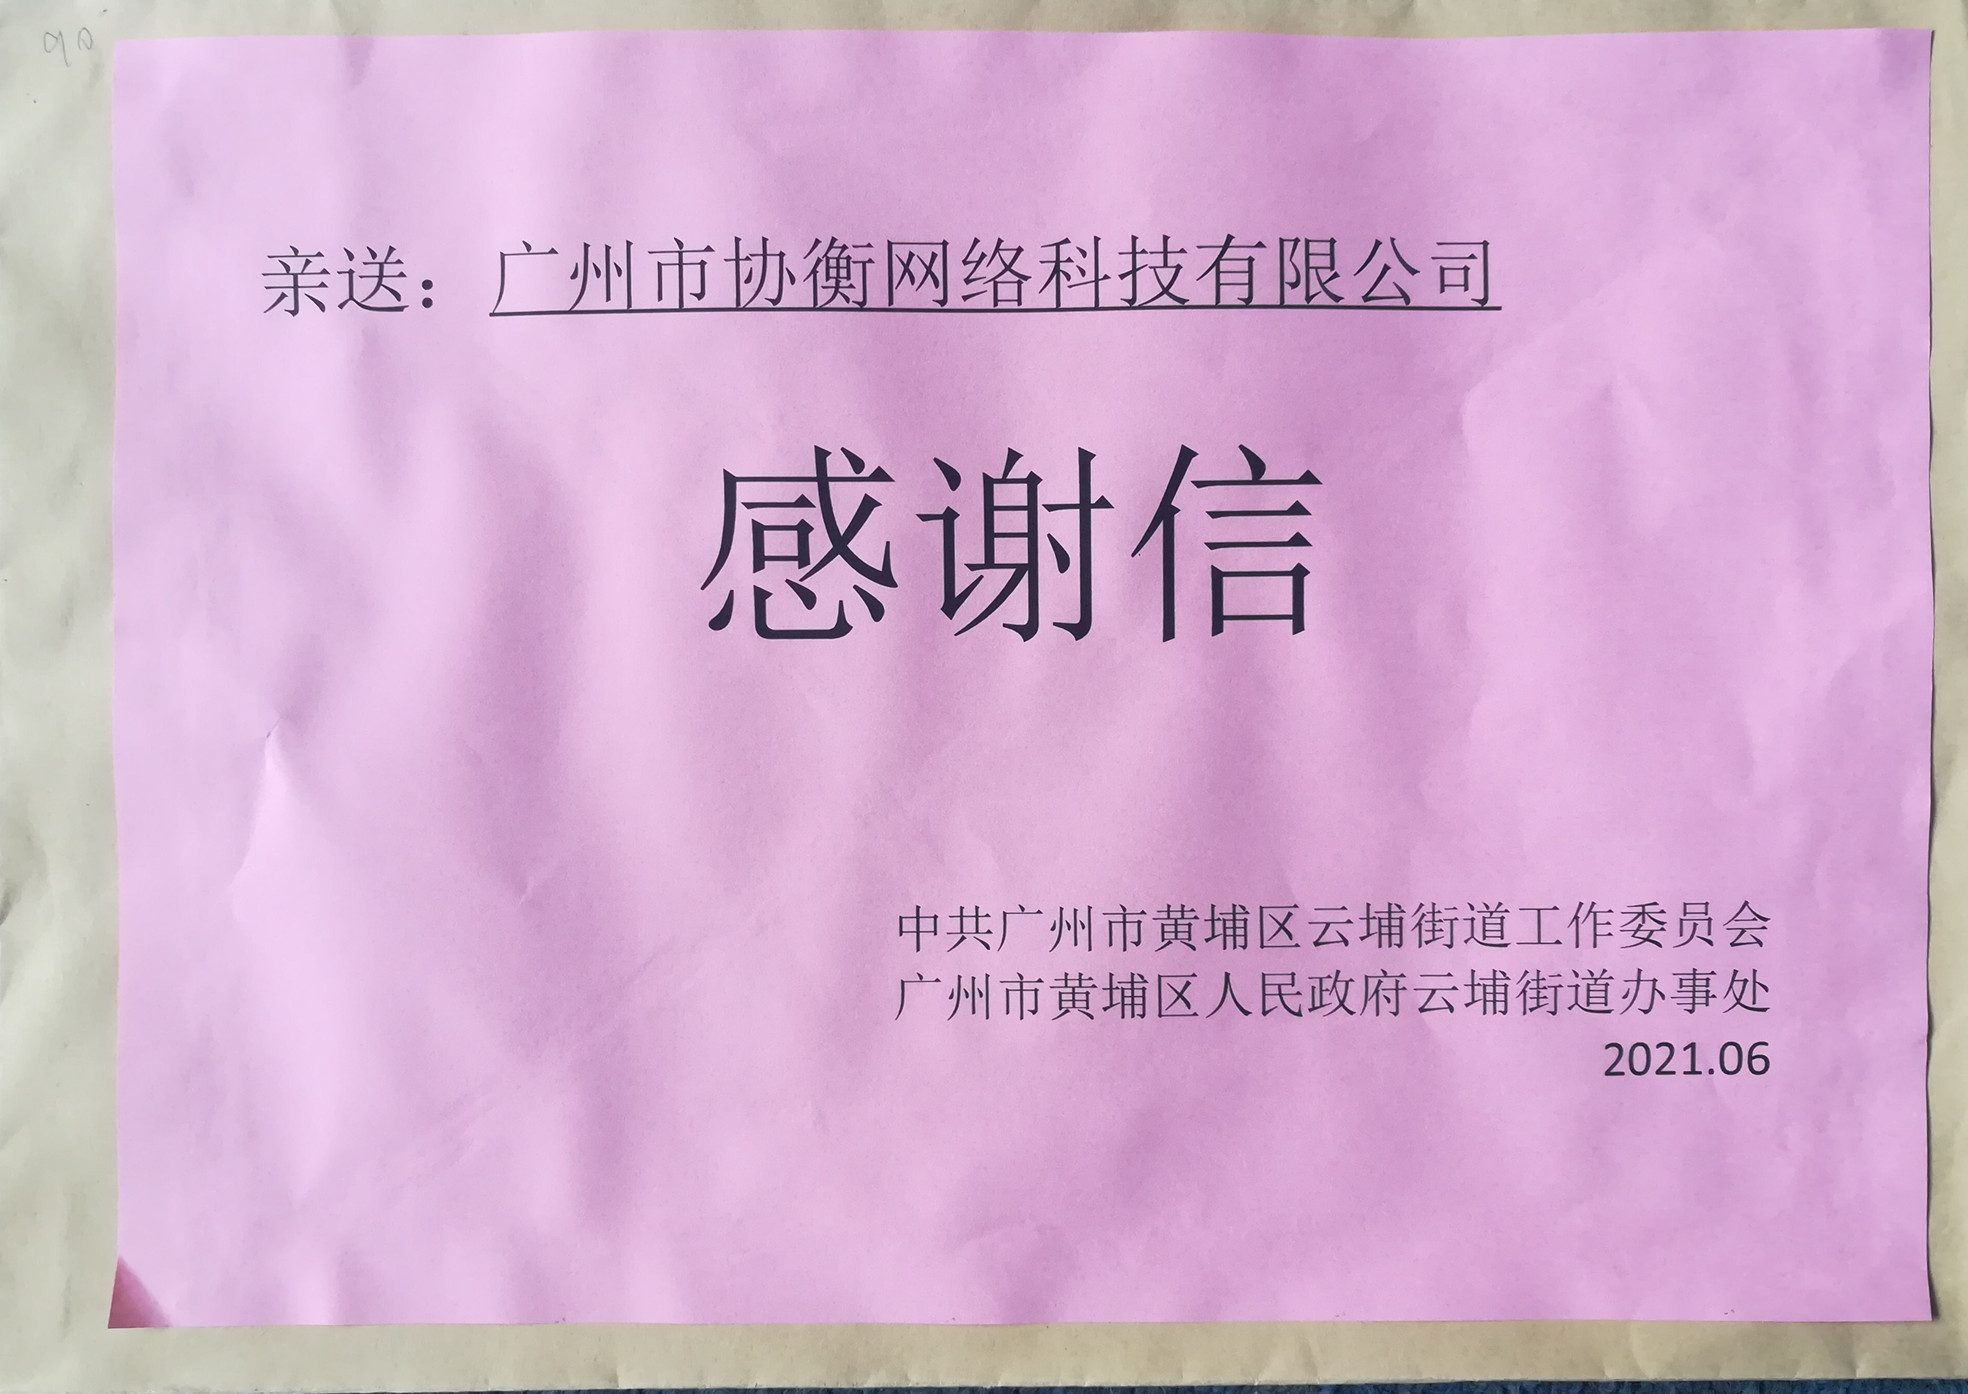 协衡收到广州市黄浦区人民政府防疫感谢信，点赞抗疫贡献 